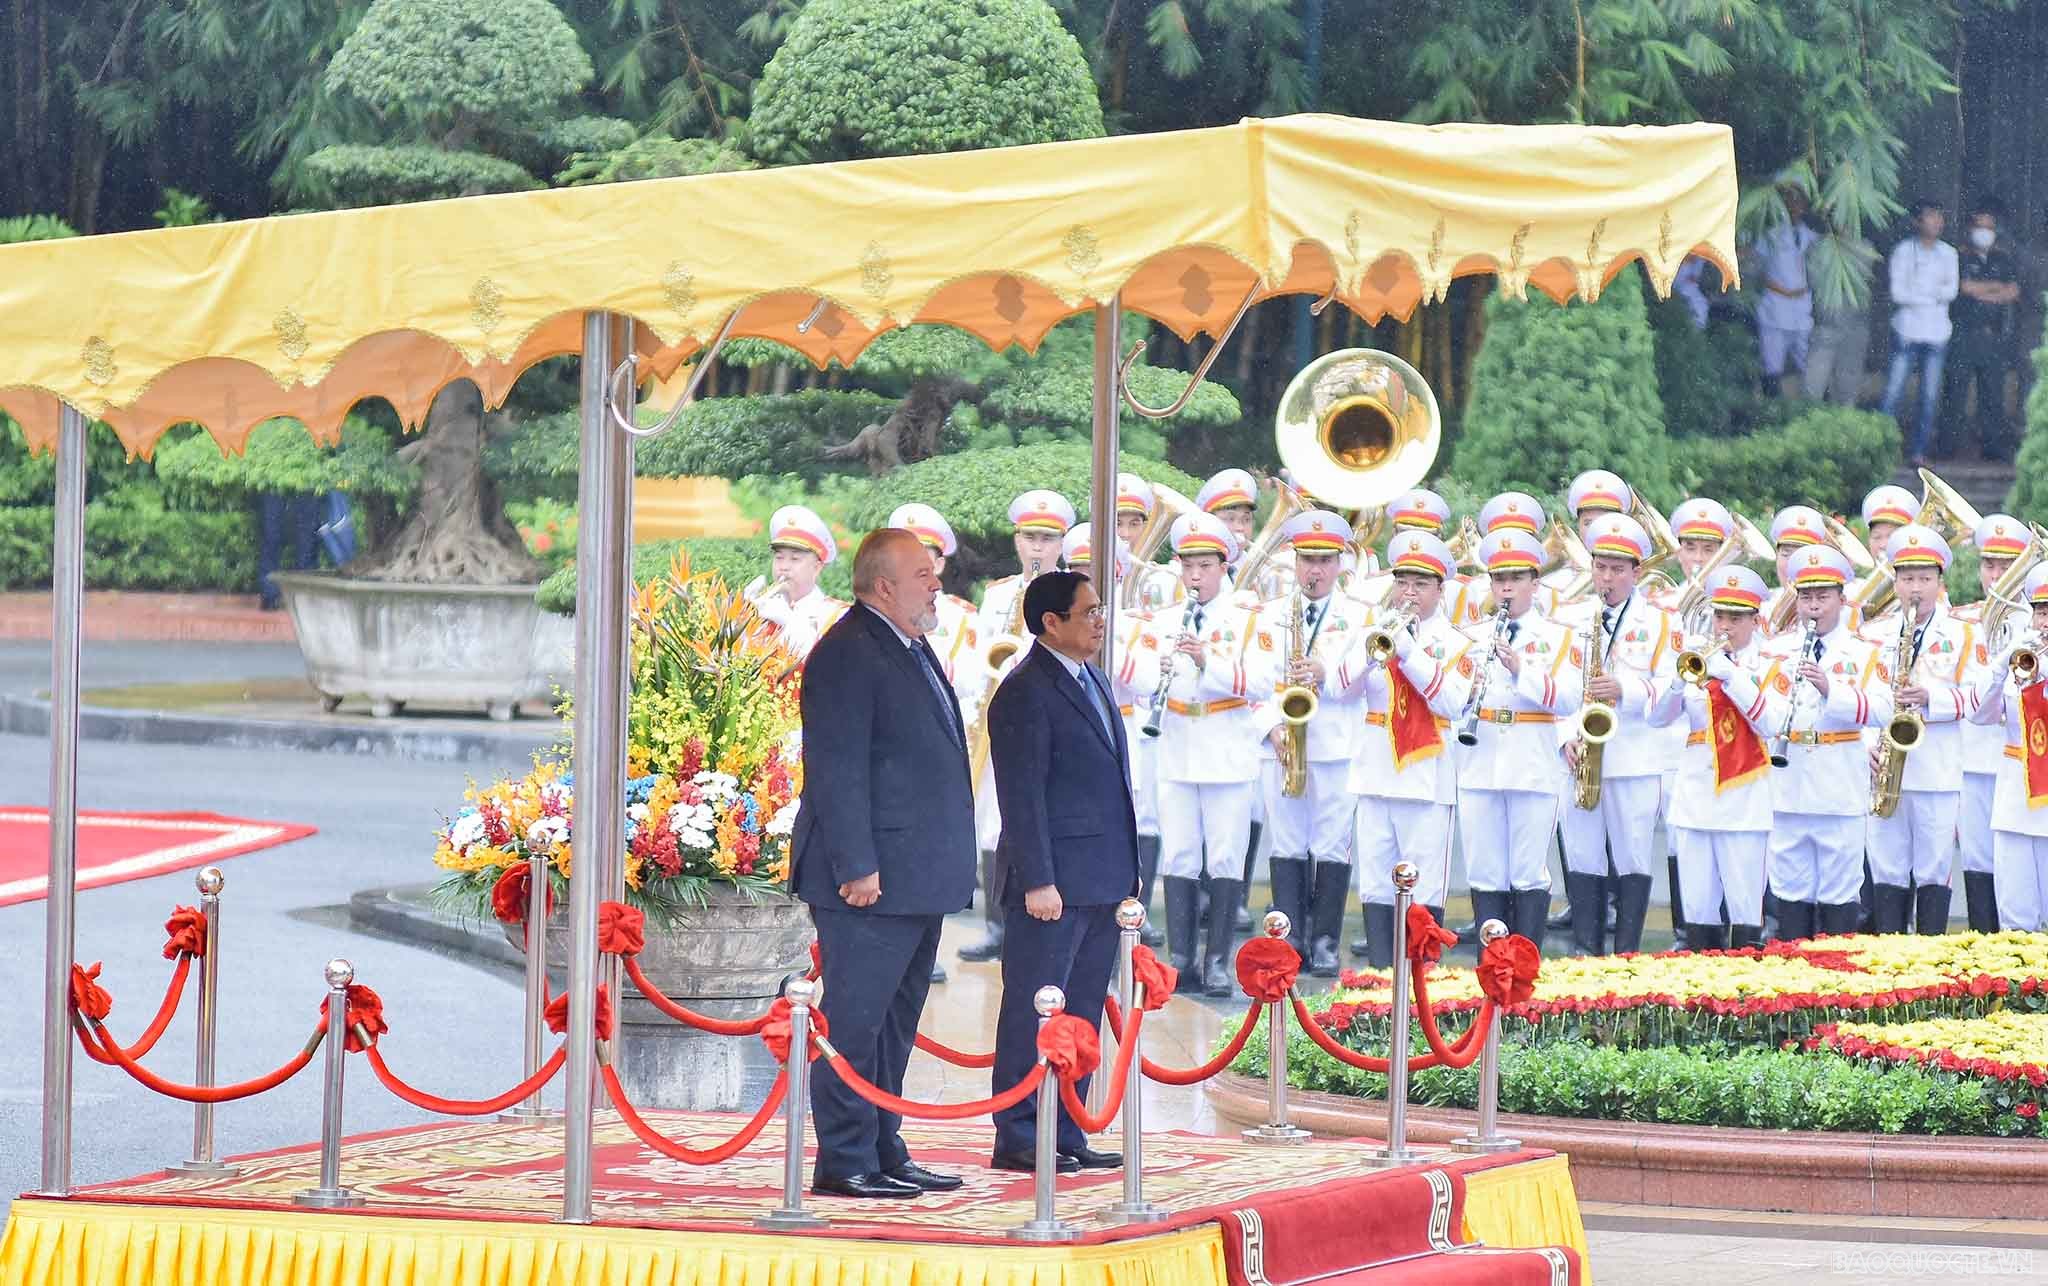 Nhận lời mời của Thủ tướng Chính phủ Phạm Minh Chính, Thủ tướng Cuba Manuel Marrero Cruz thăm hữu nghị chính thức Việt Nam từ ngày 28/9-2/10/2022.